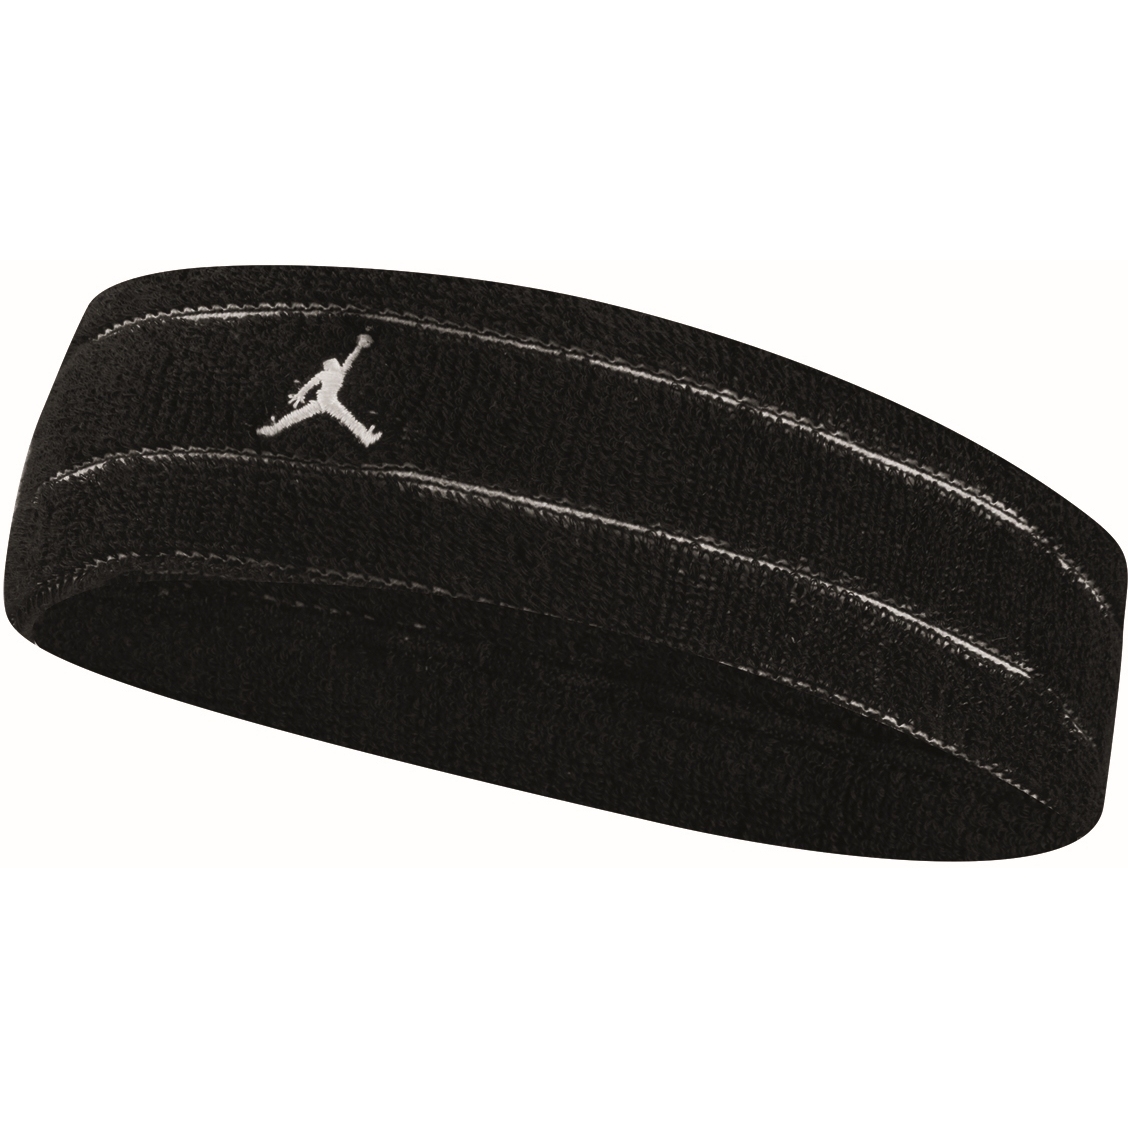 Produktbild von Nike Jordan Terry Stirnband - schwarz/schwarz/weiß